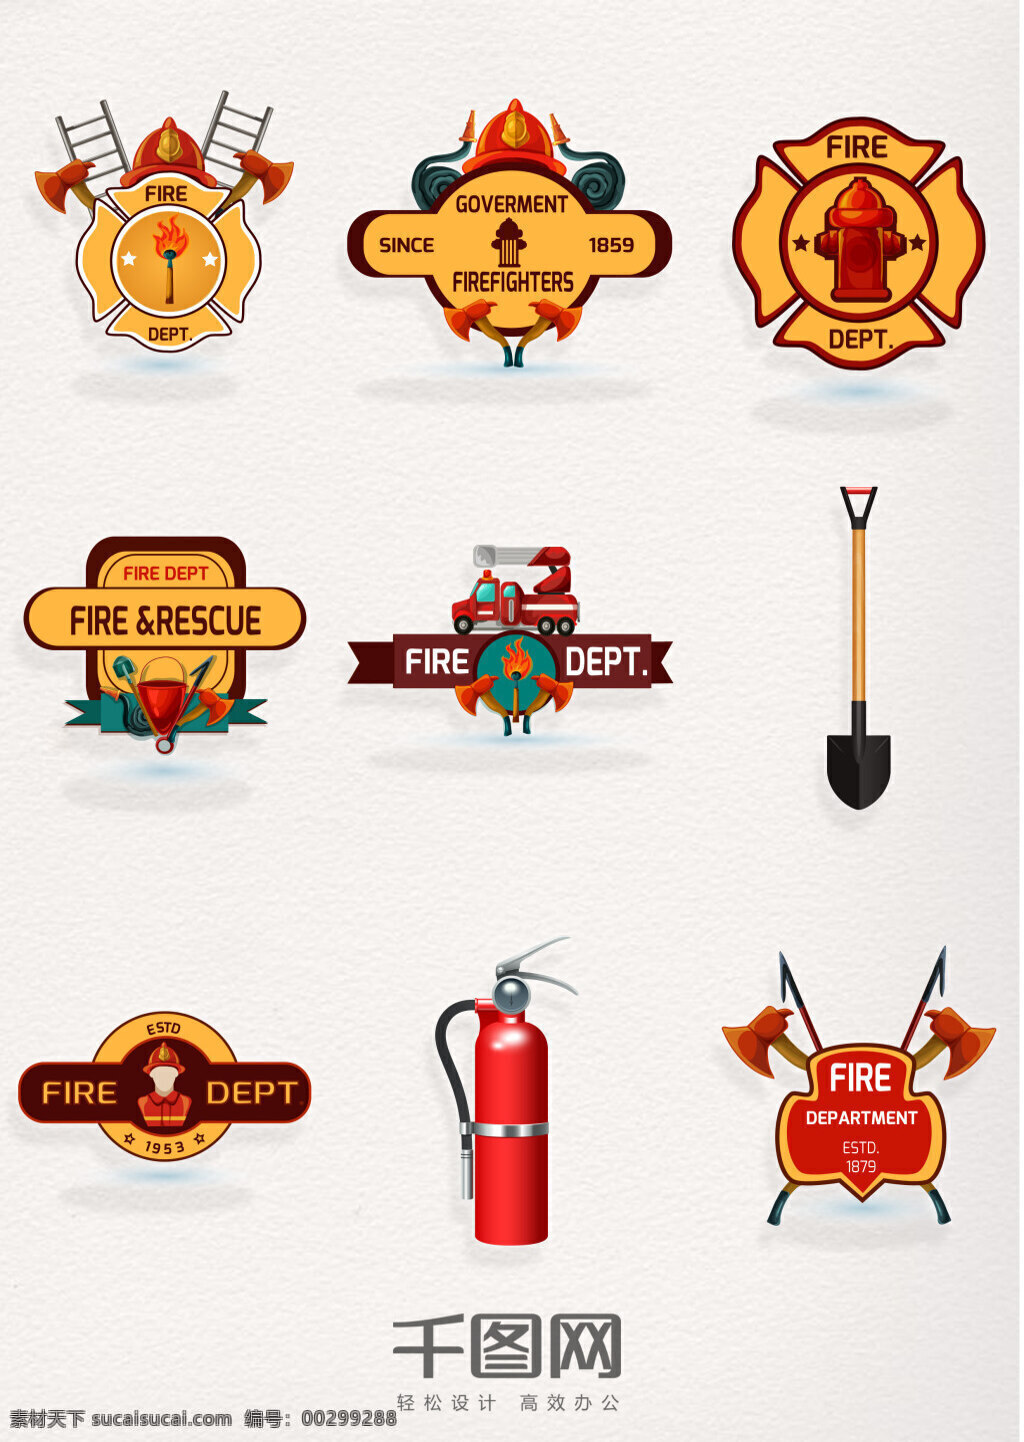 中国 消防 安 全日 图案 消防图案设计 消防位图素材 消防元素 精美消防图标 消防素材 消防装备 装备 创意设计 消火栓 消防位图